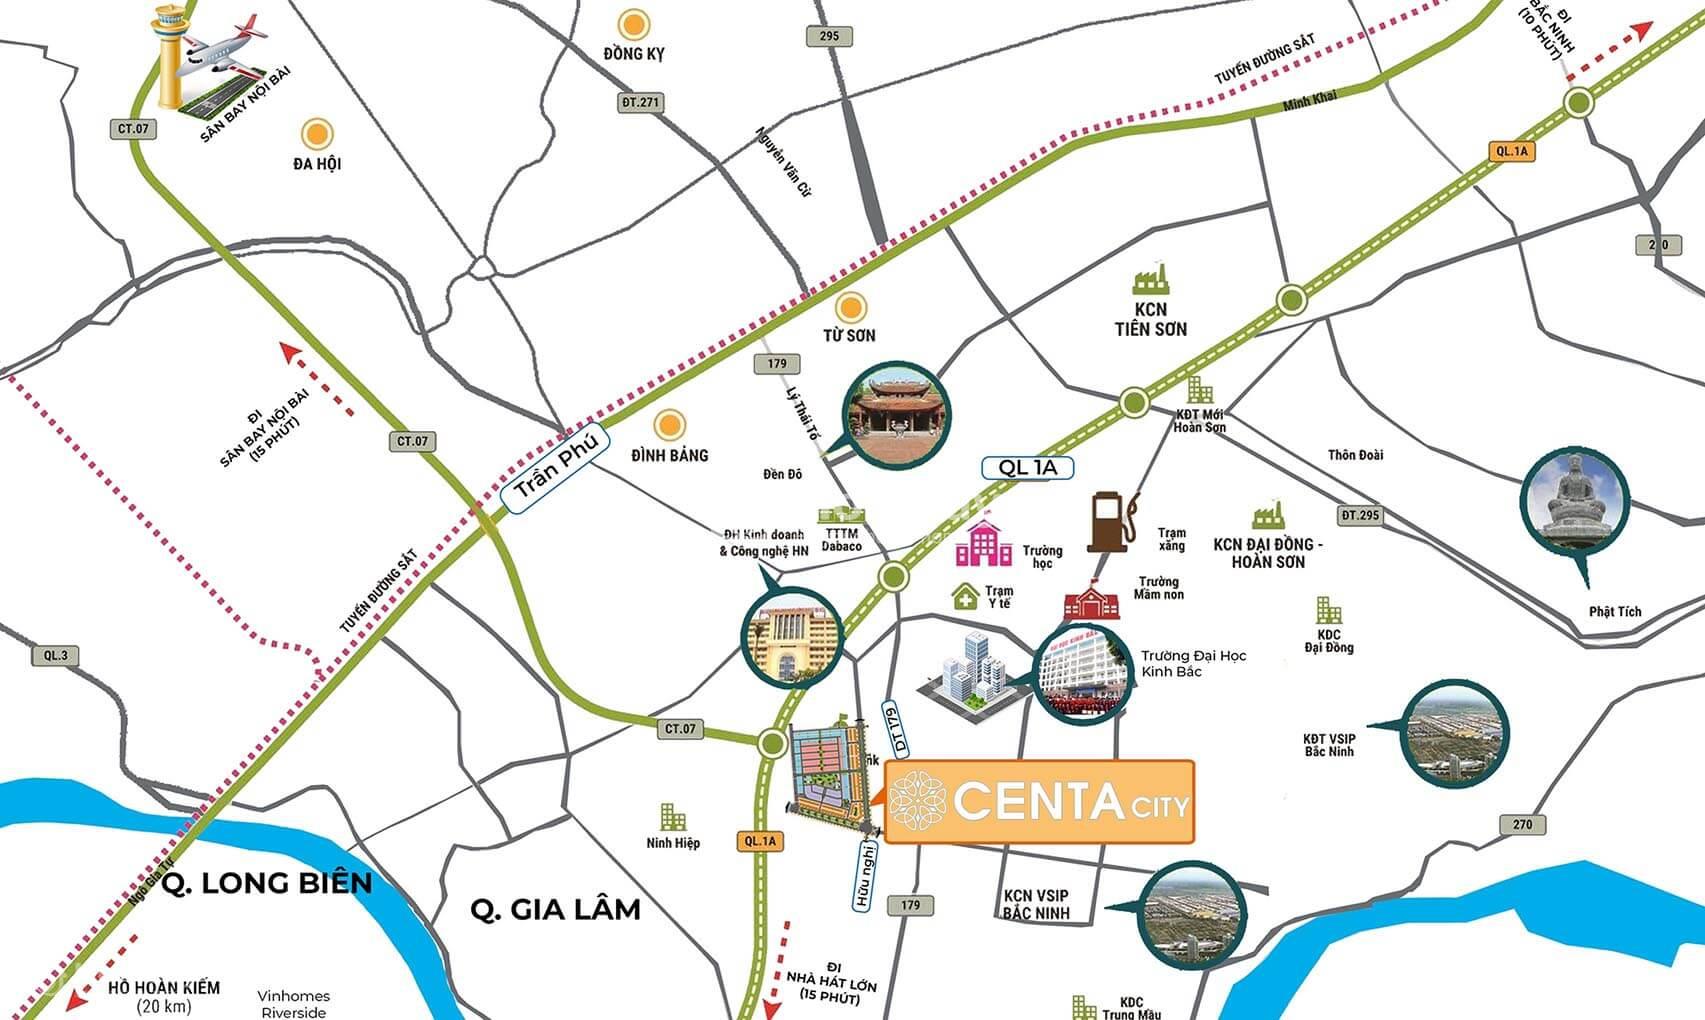 Centa City